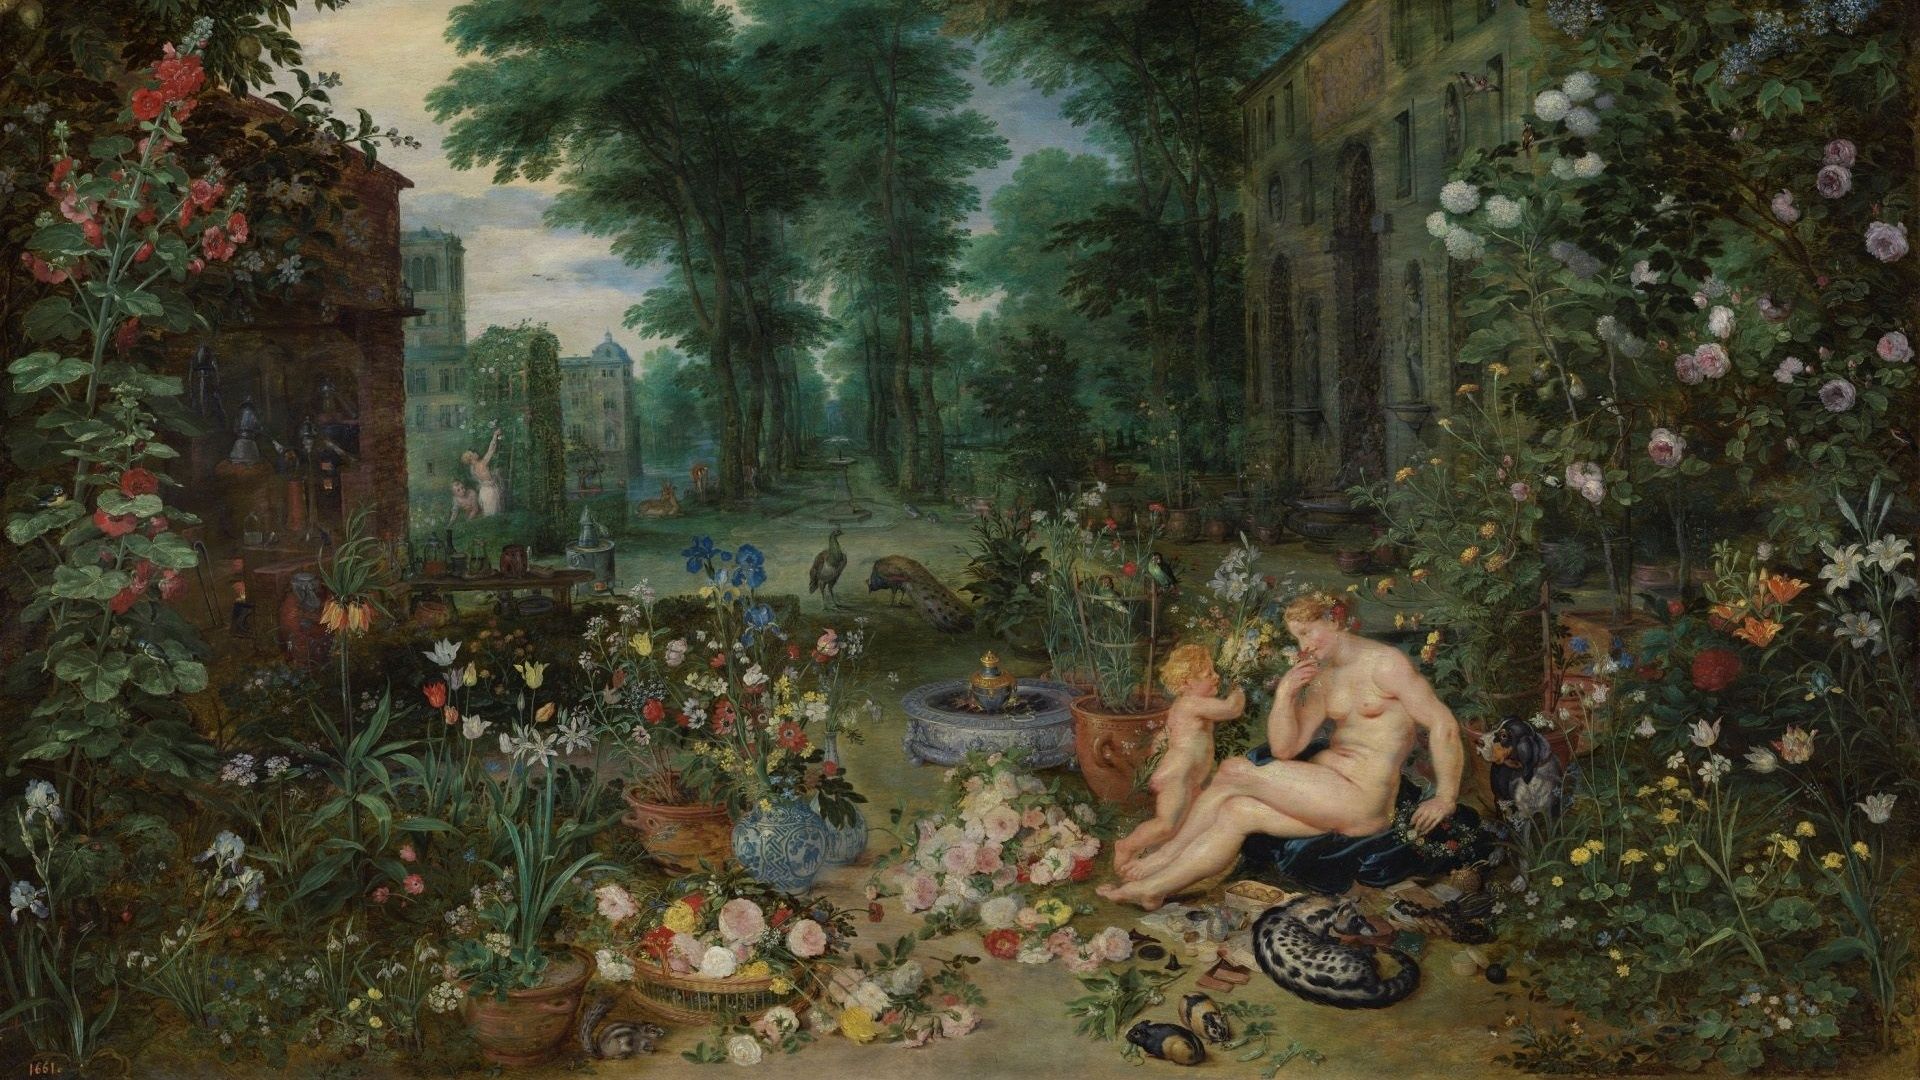 Le musée du Prado propose à ses visiteurs d’en savoir plus sur "Allégorie de l’odorat" de Peter Paul Rubens et Jan Brueghel l’Ancien, par le prisme de l’odorat.